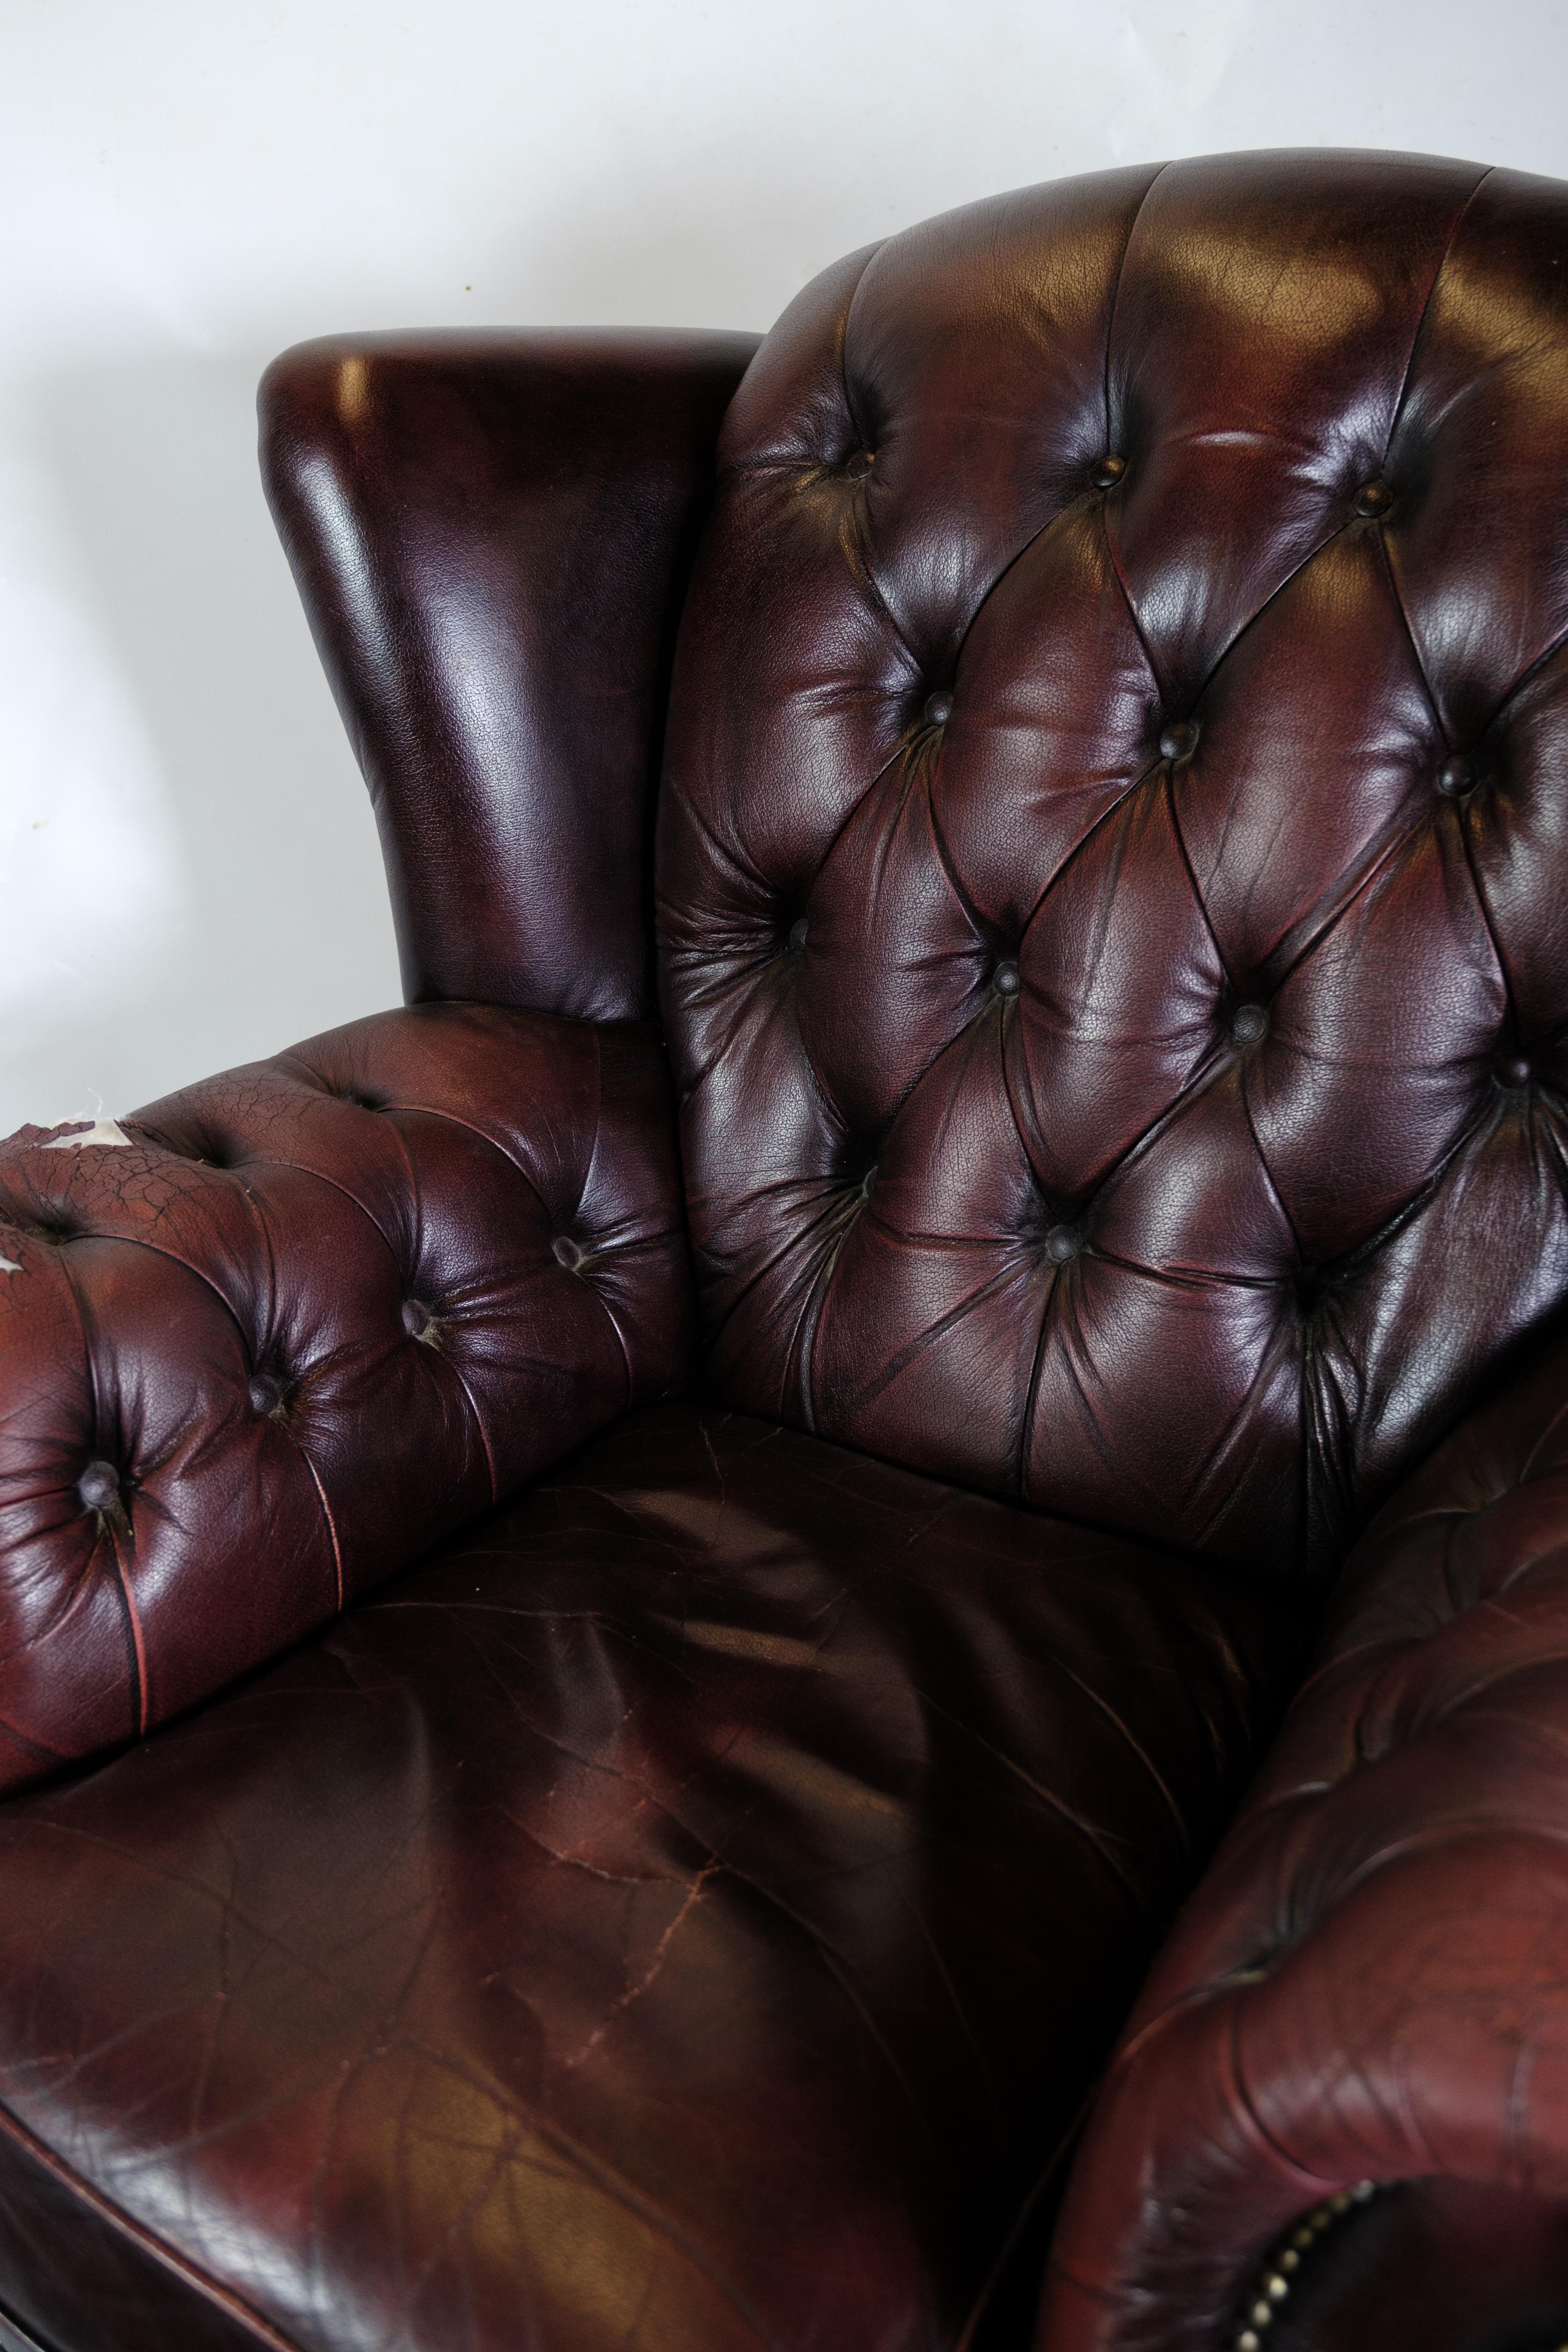 Ce fauteuil Chesterfield avec pouf assorti est une représentation classique de l'élégance et du confort intemporels. Avec ses pieds en bois laqué noir et son magnifique revêtement en cuir clouté, cet ensemble respire à la fois le luxe et le charme